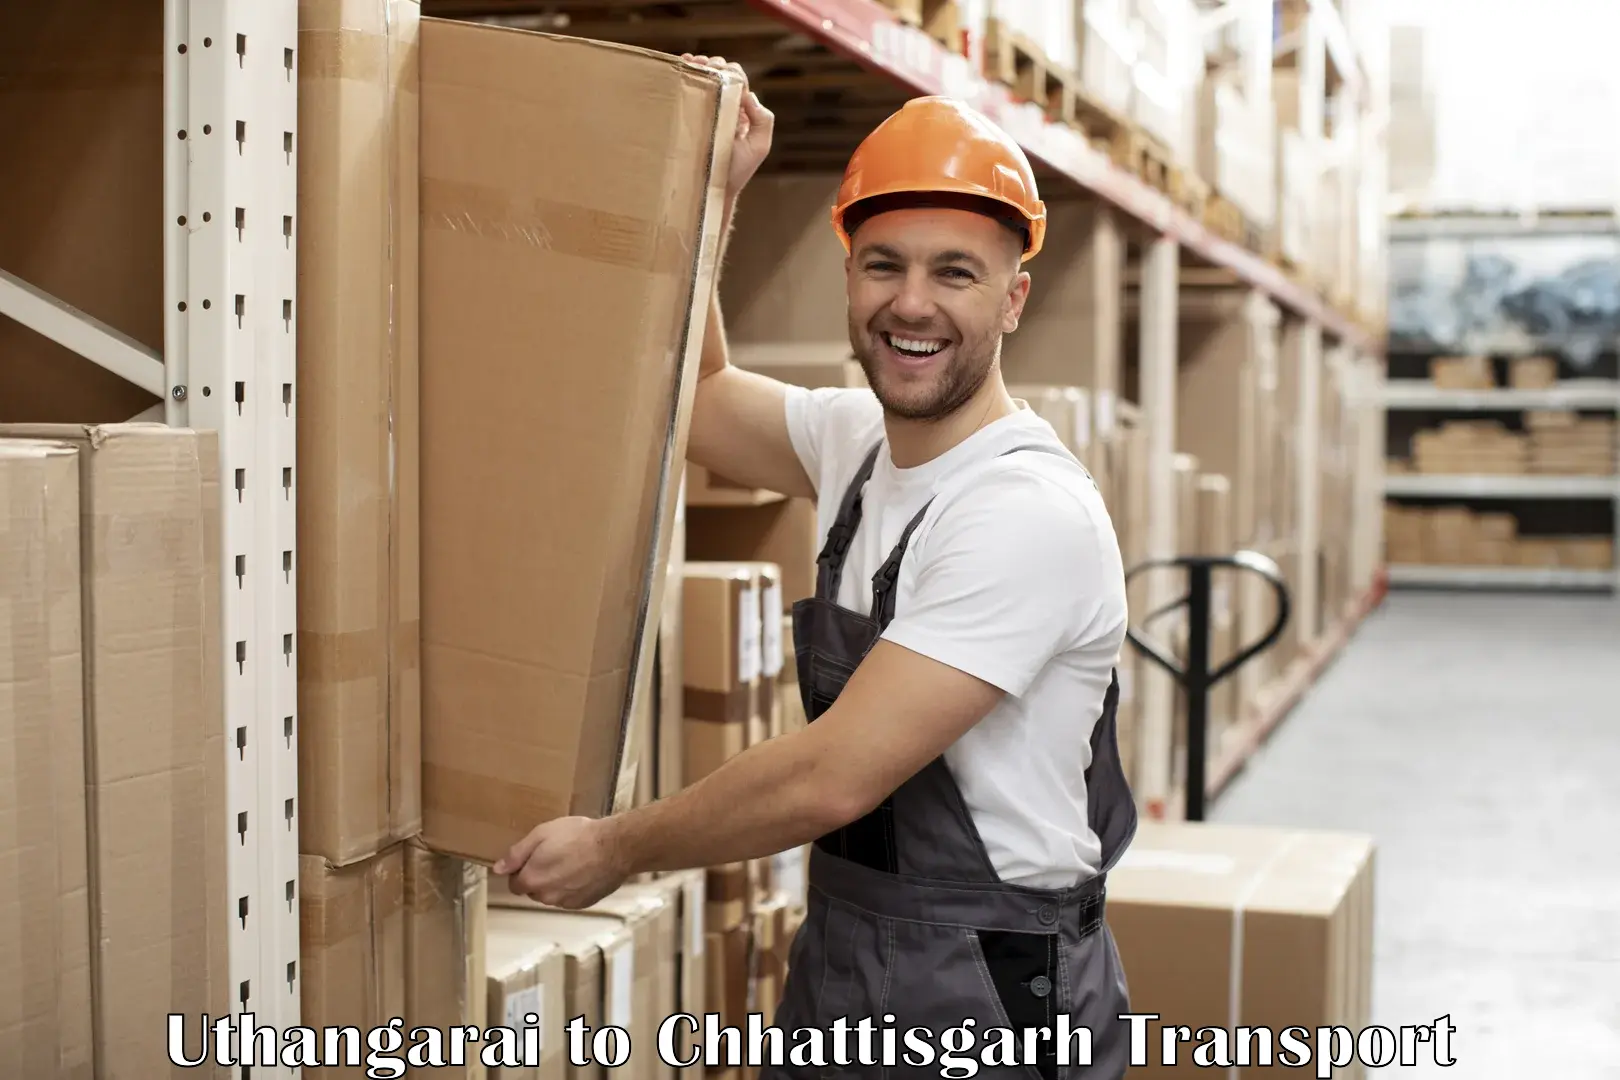 Daily transport service Uthangarai to Raigarh Chhattisgarh